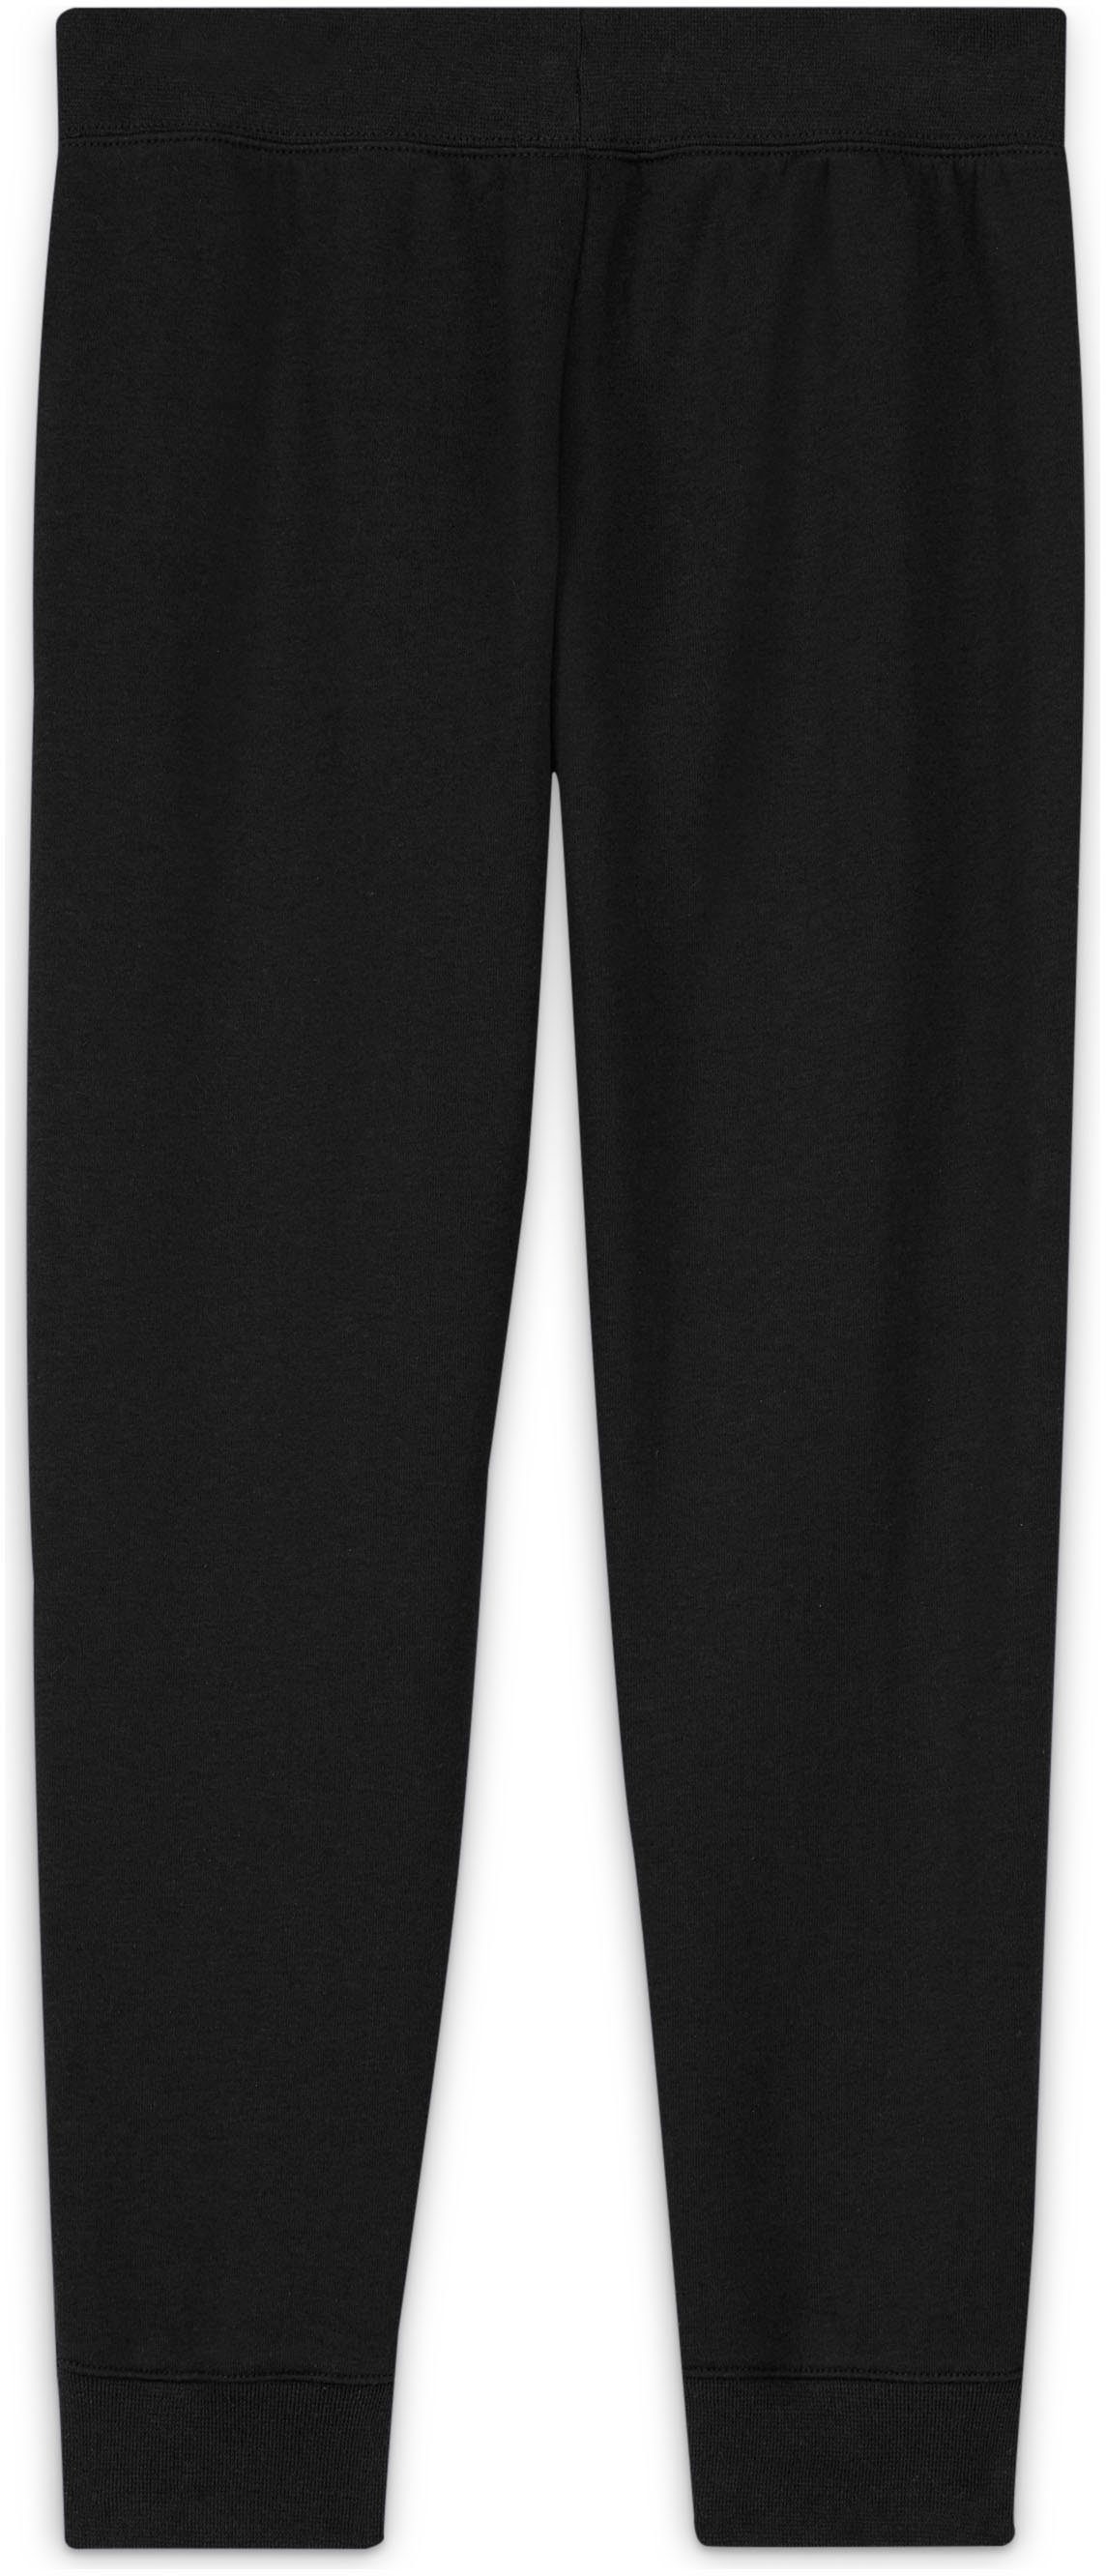 Pants Kids' Club Big Nike Jogginghose (Girls) Sportswear schwarz Fleece